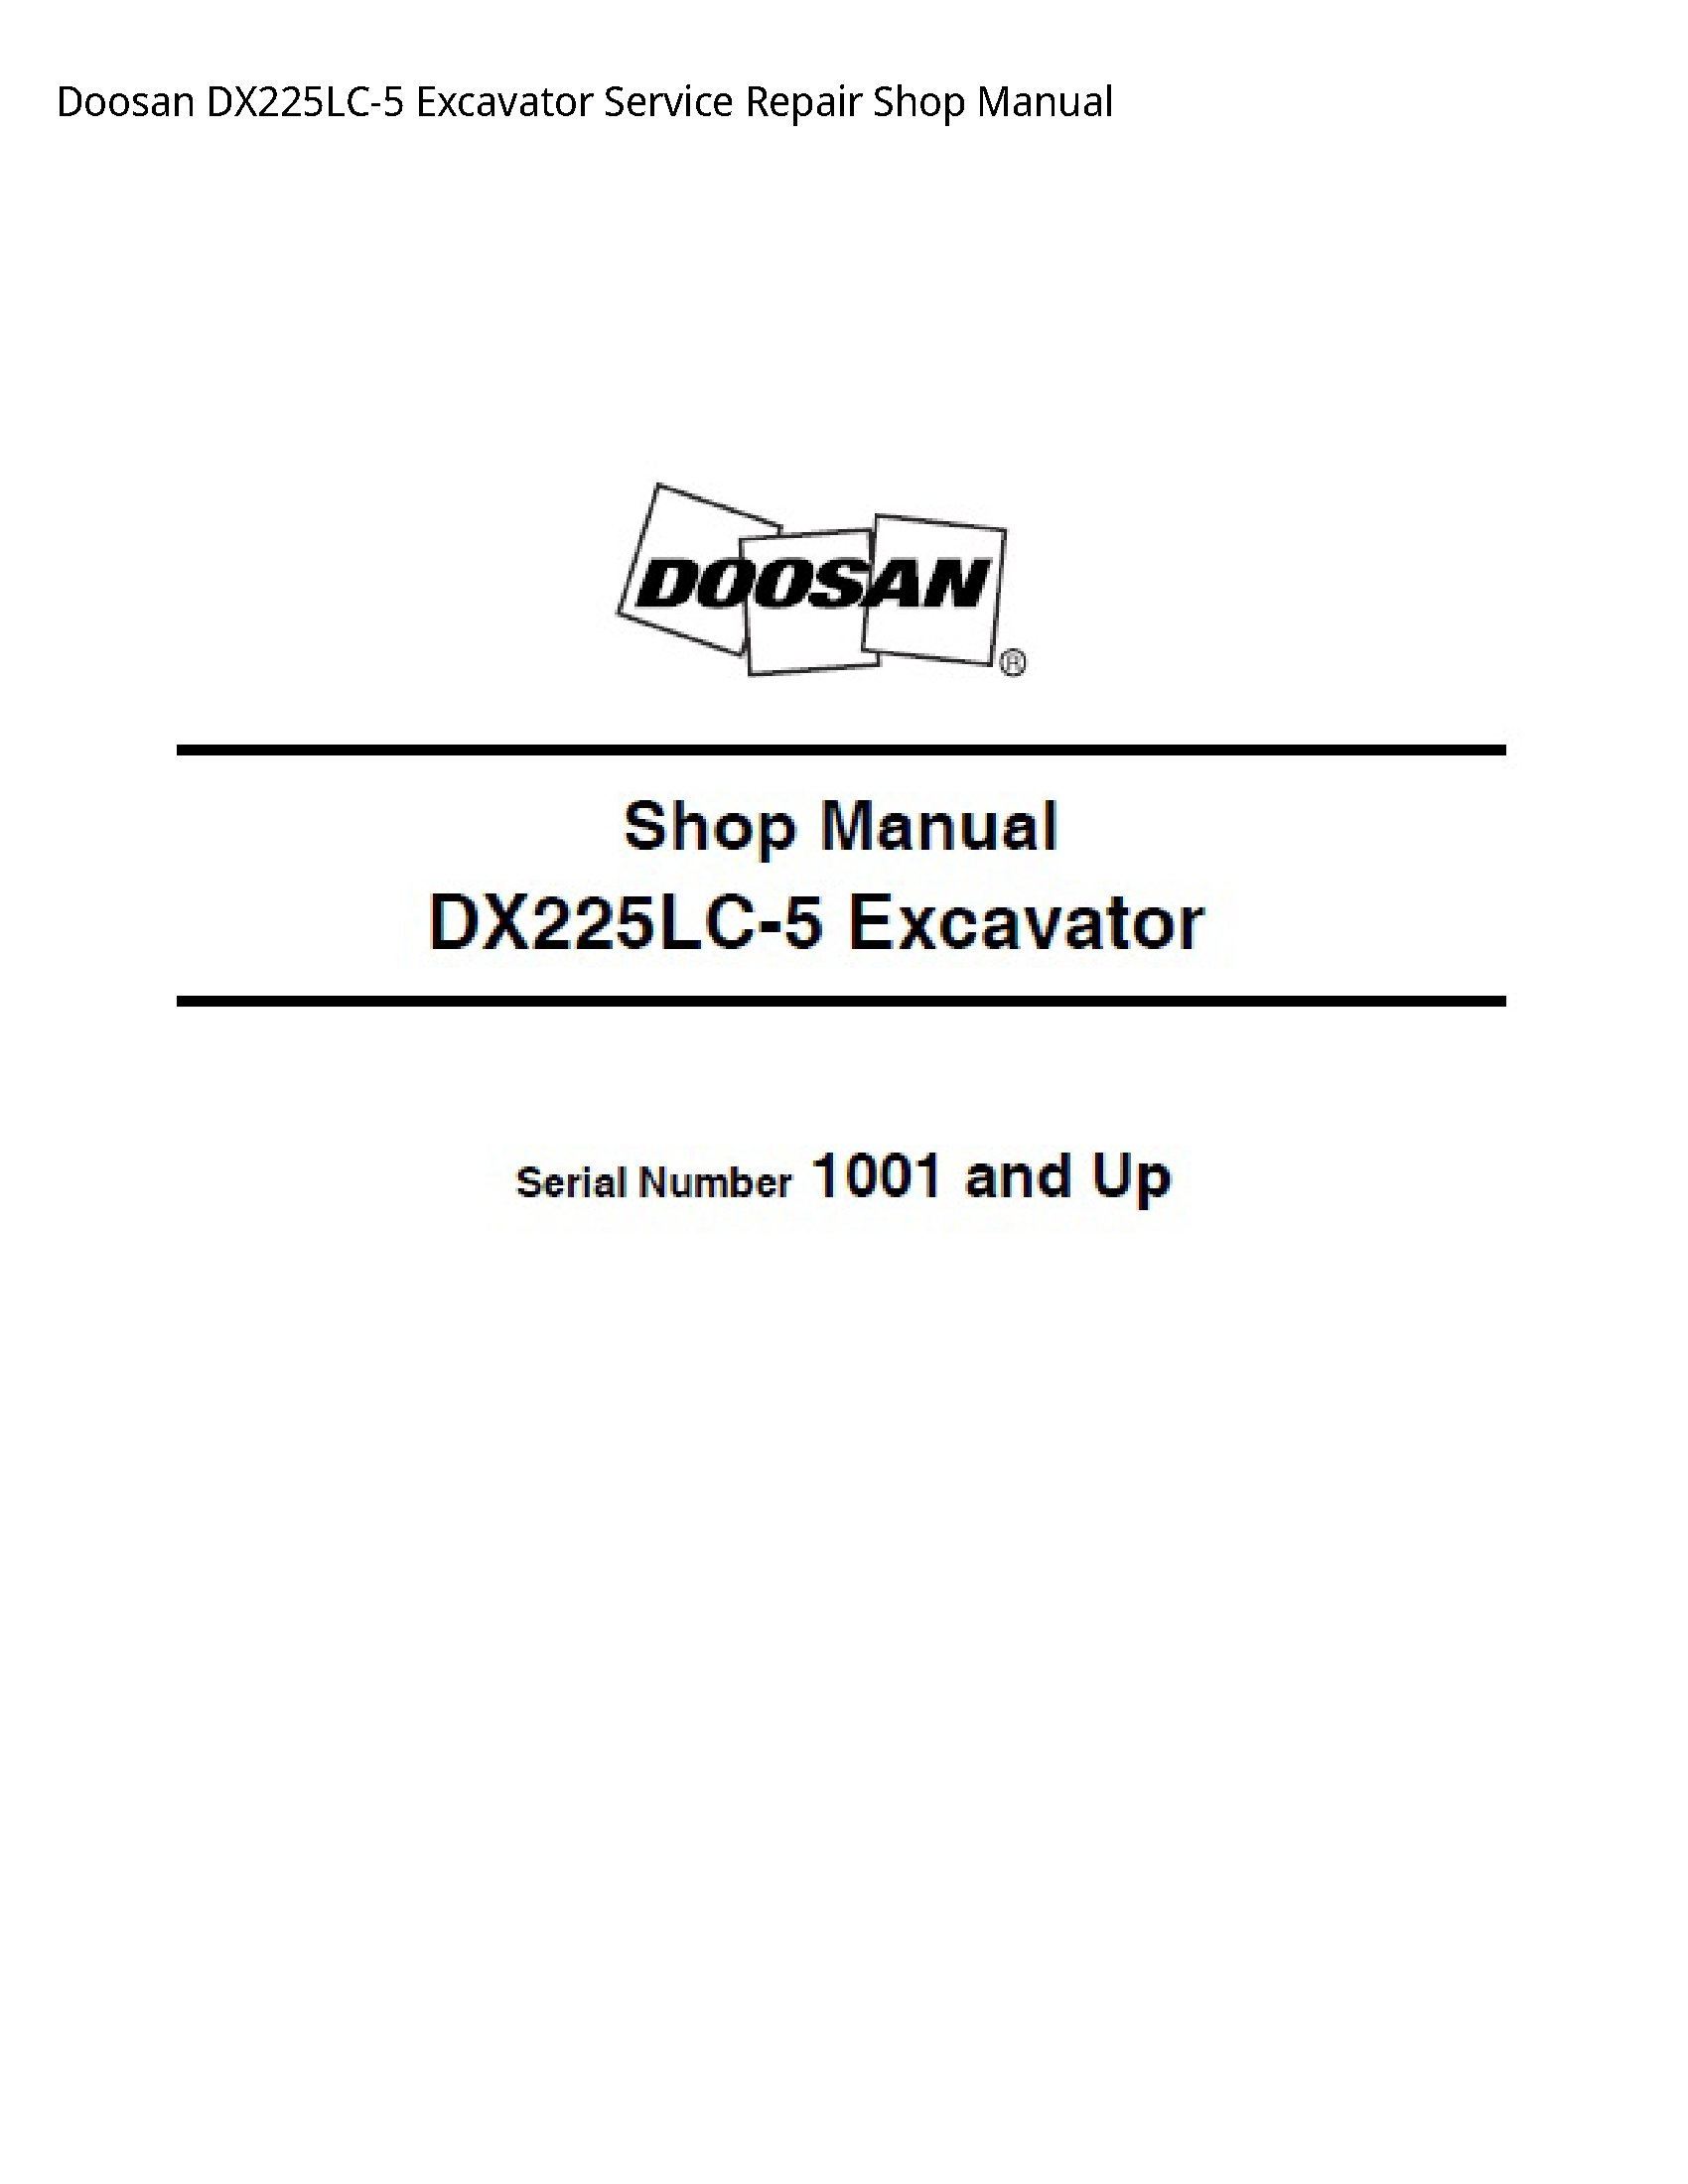 Doosan DX225LC-5 Excavator manual